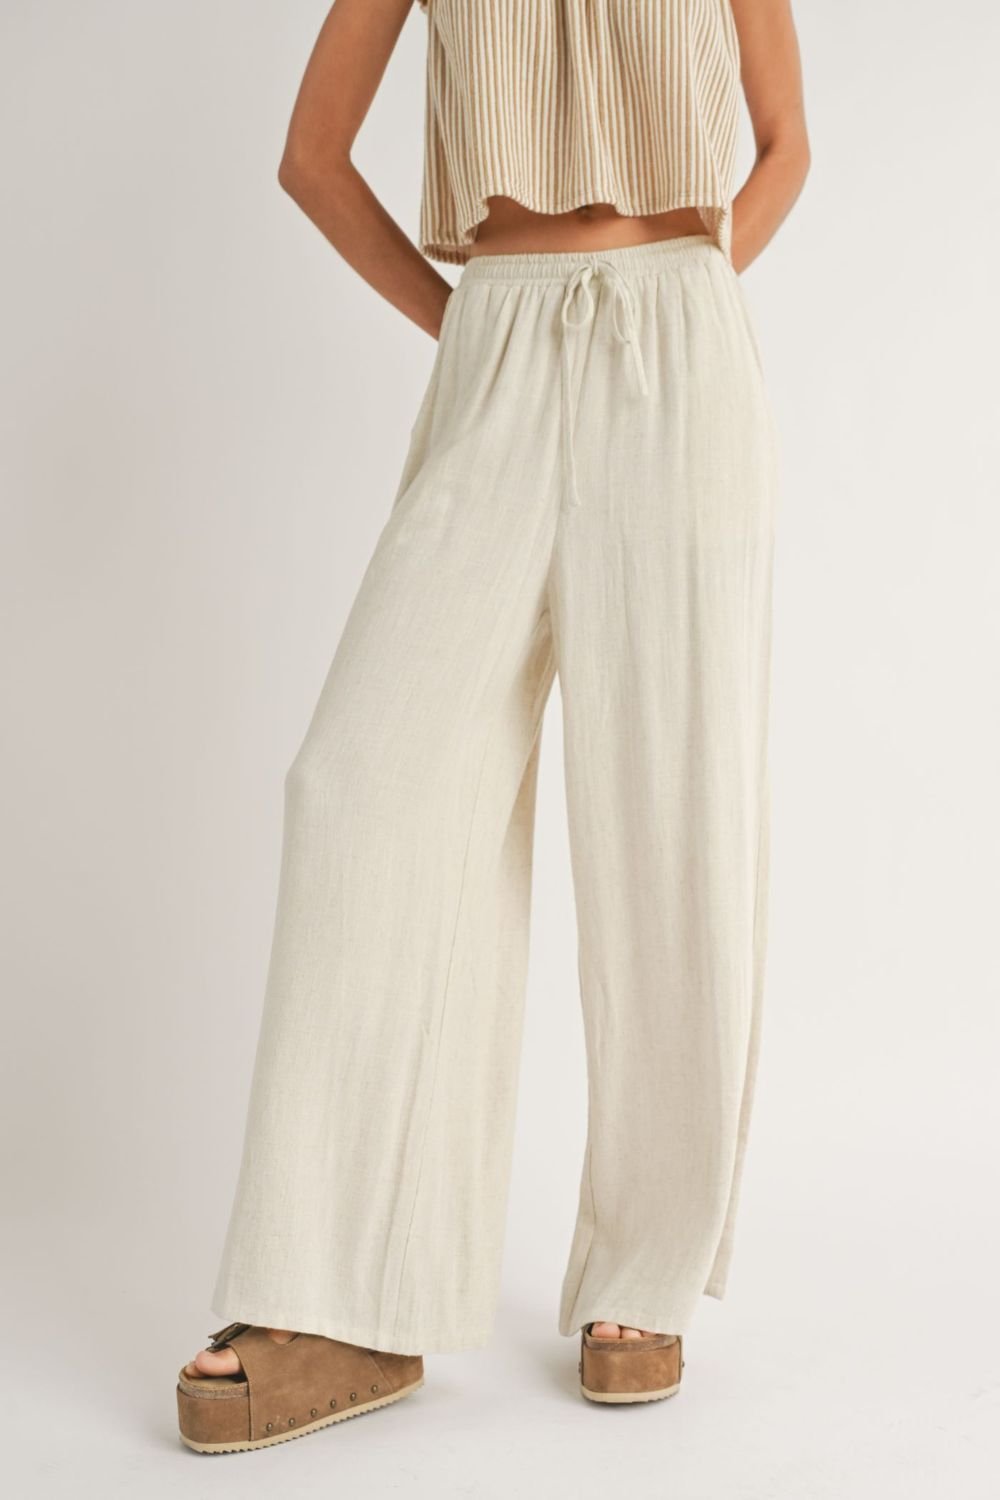 Women's Linen Blend Wide Leg Summer Pants | Oatmeal - Women's Pants - Blooming Daily